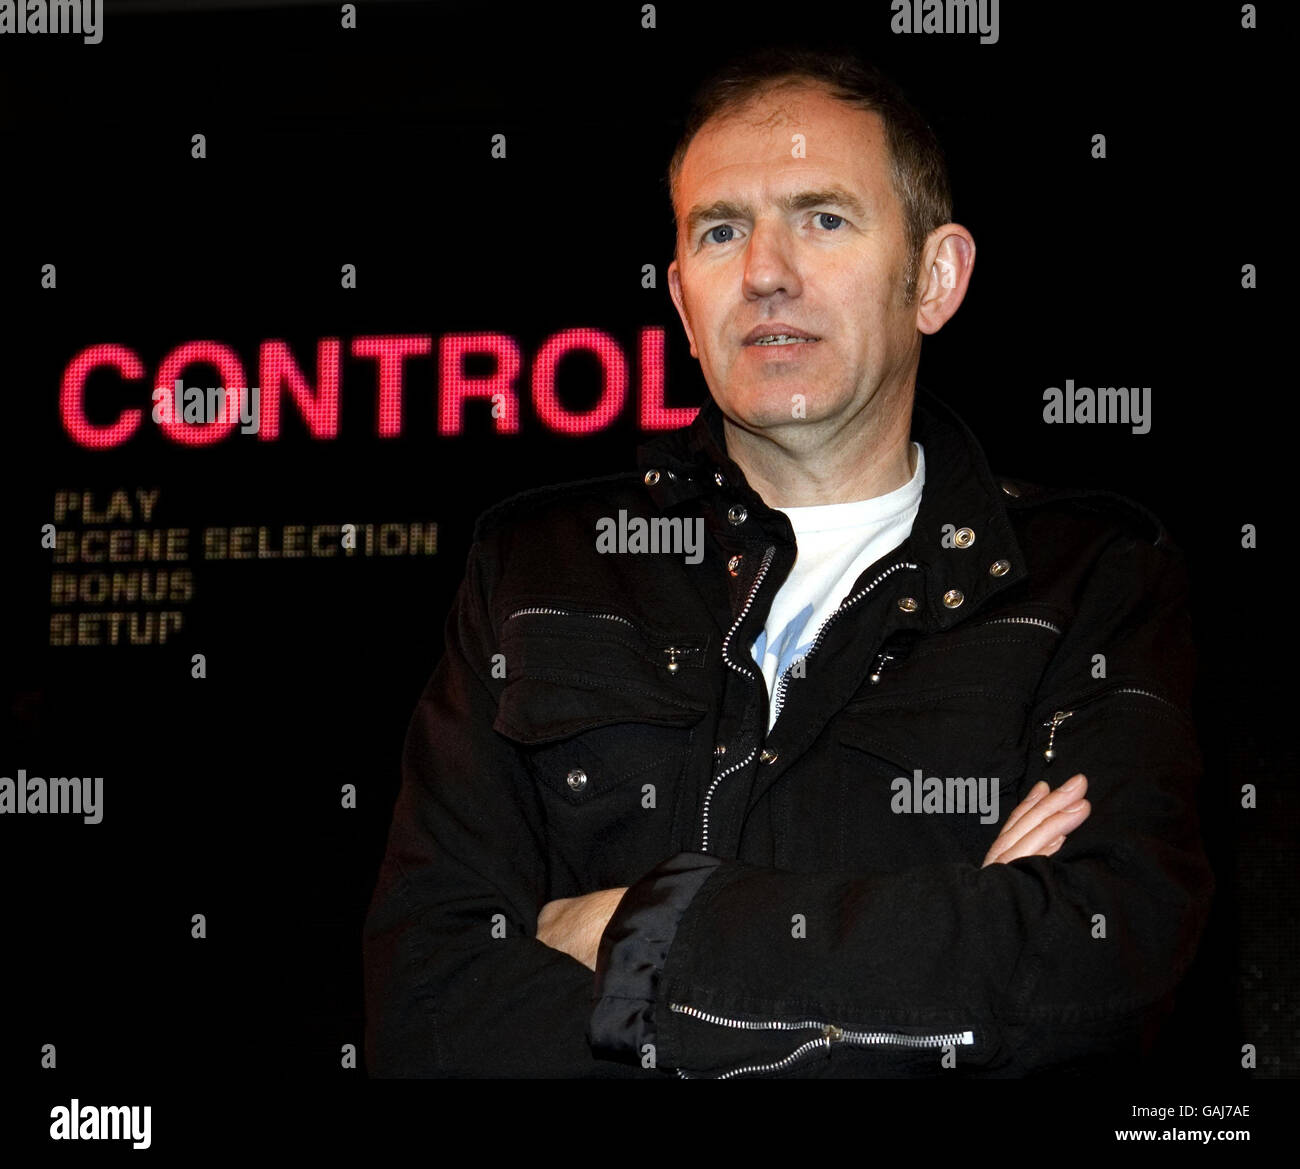 Anton Corbijn, directeur de la Joy Division/Ian Curtis biopic 'Control' de 2007, célèbre la sortie du film sur DVD et du livre, 'In Control', par une session de signature à HMV à Oxford Street, Londres. Banque D'Images